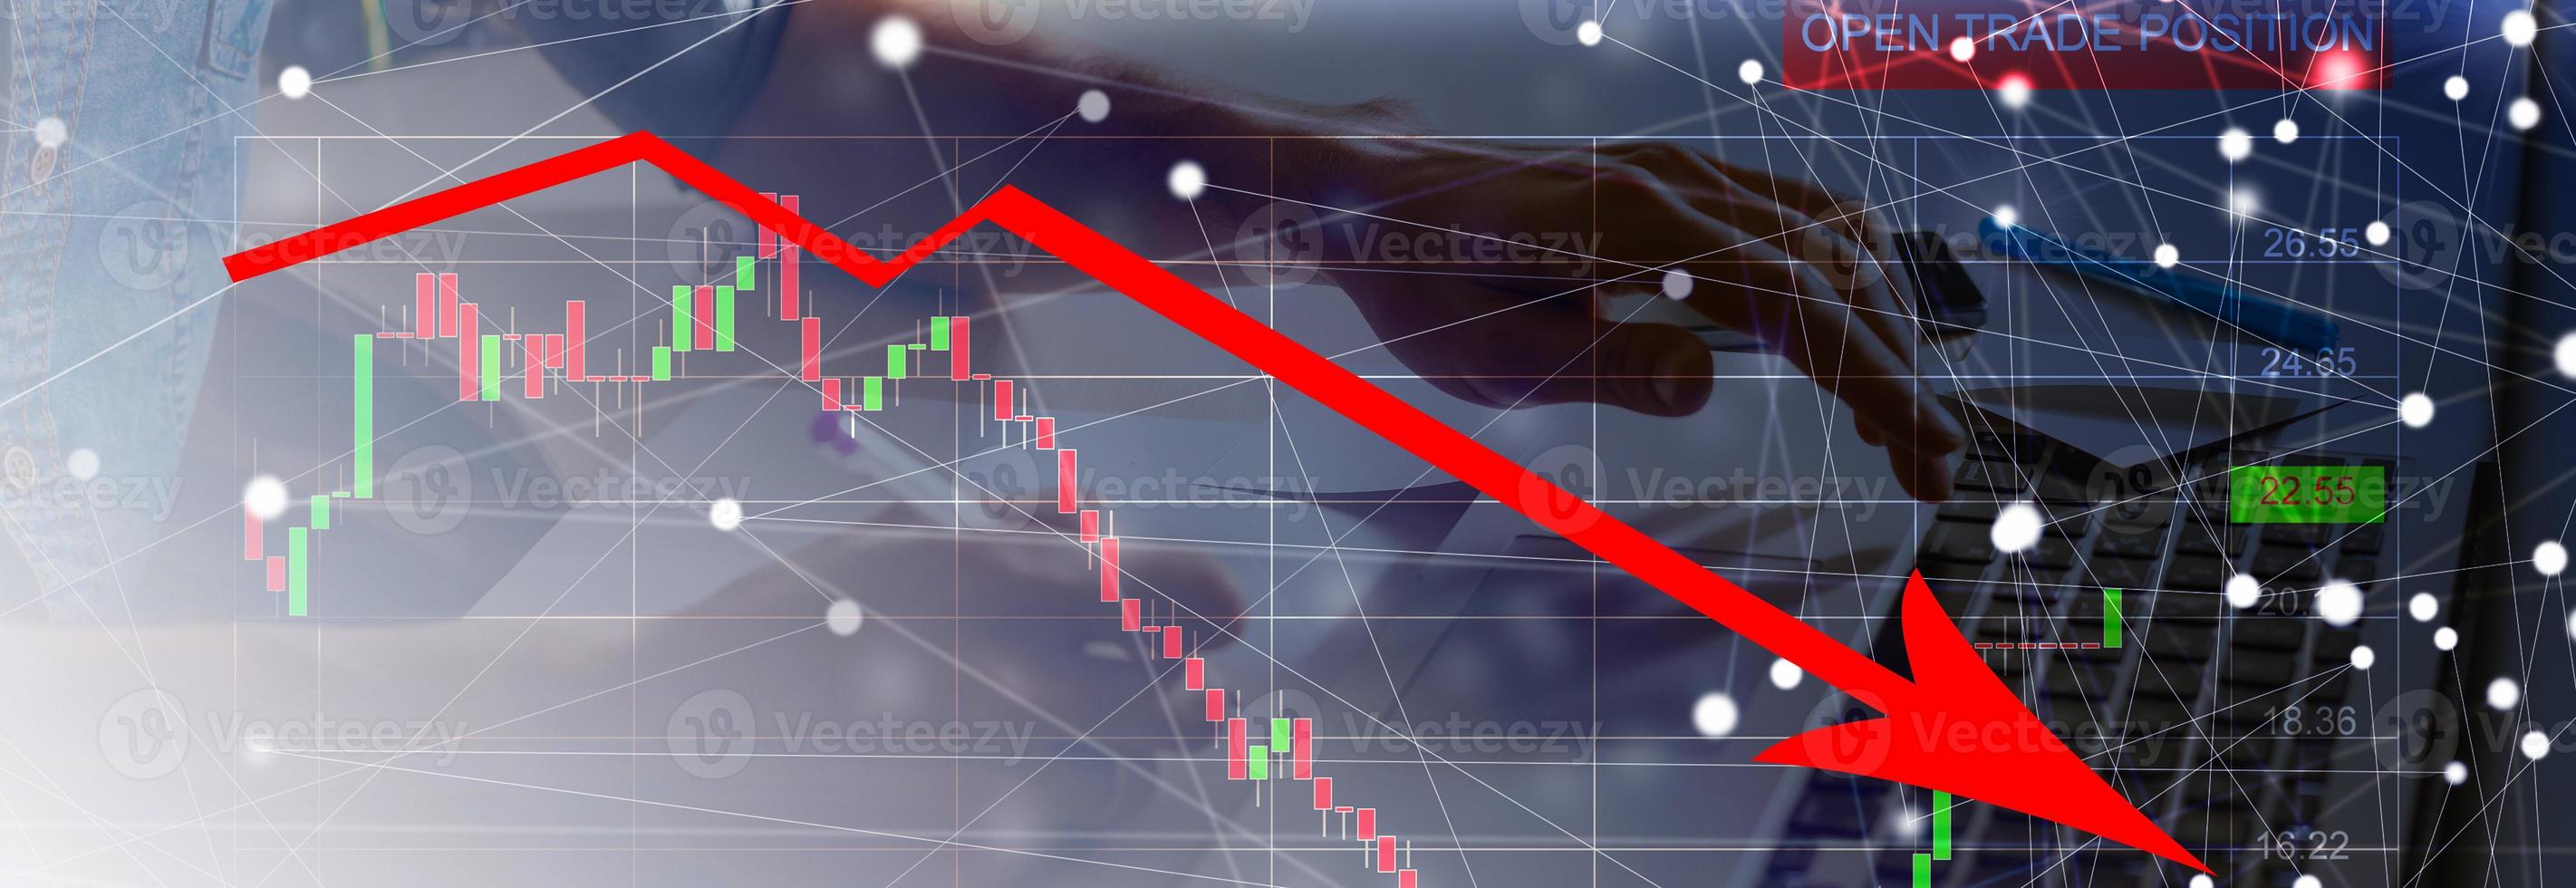 el económico crisis de 2020. rojo flechas otoño a el suelo, indicando el económico recesión ese será ocurrir en 2020. foto